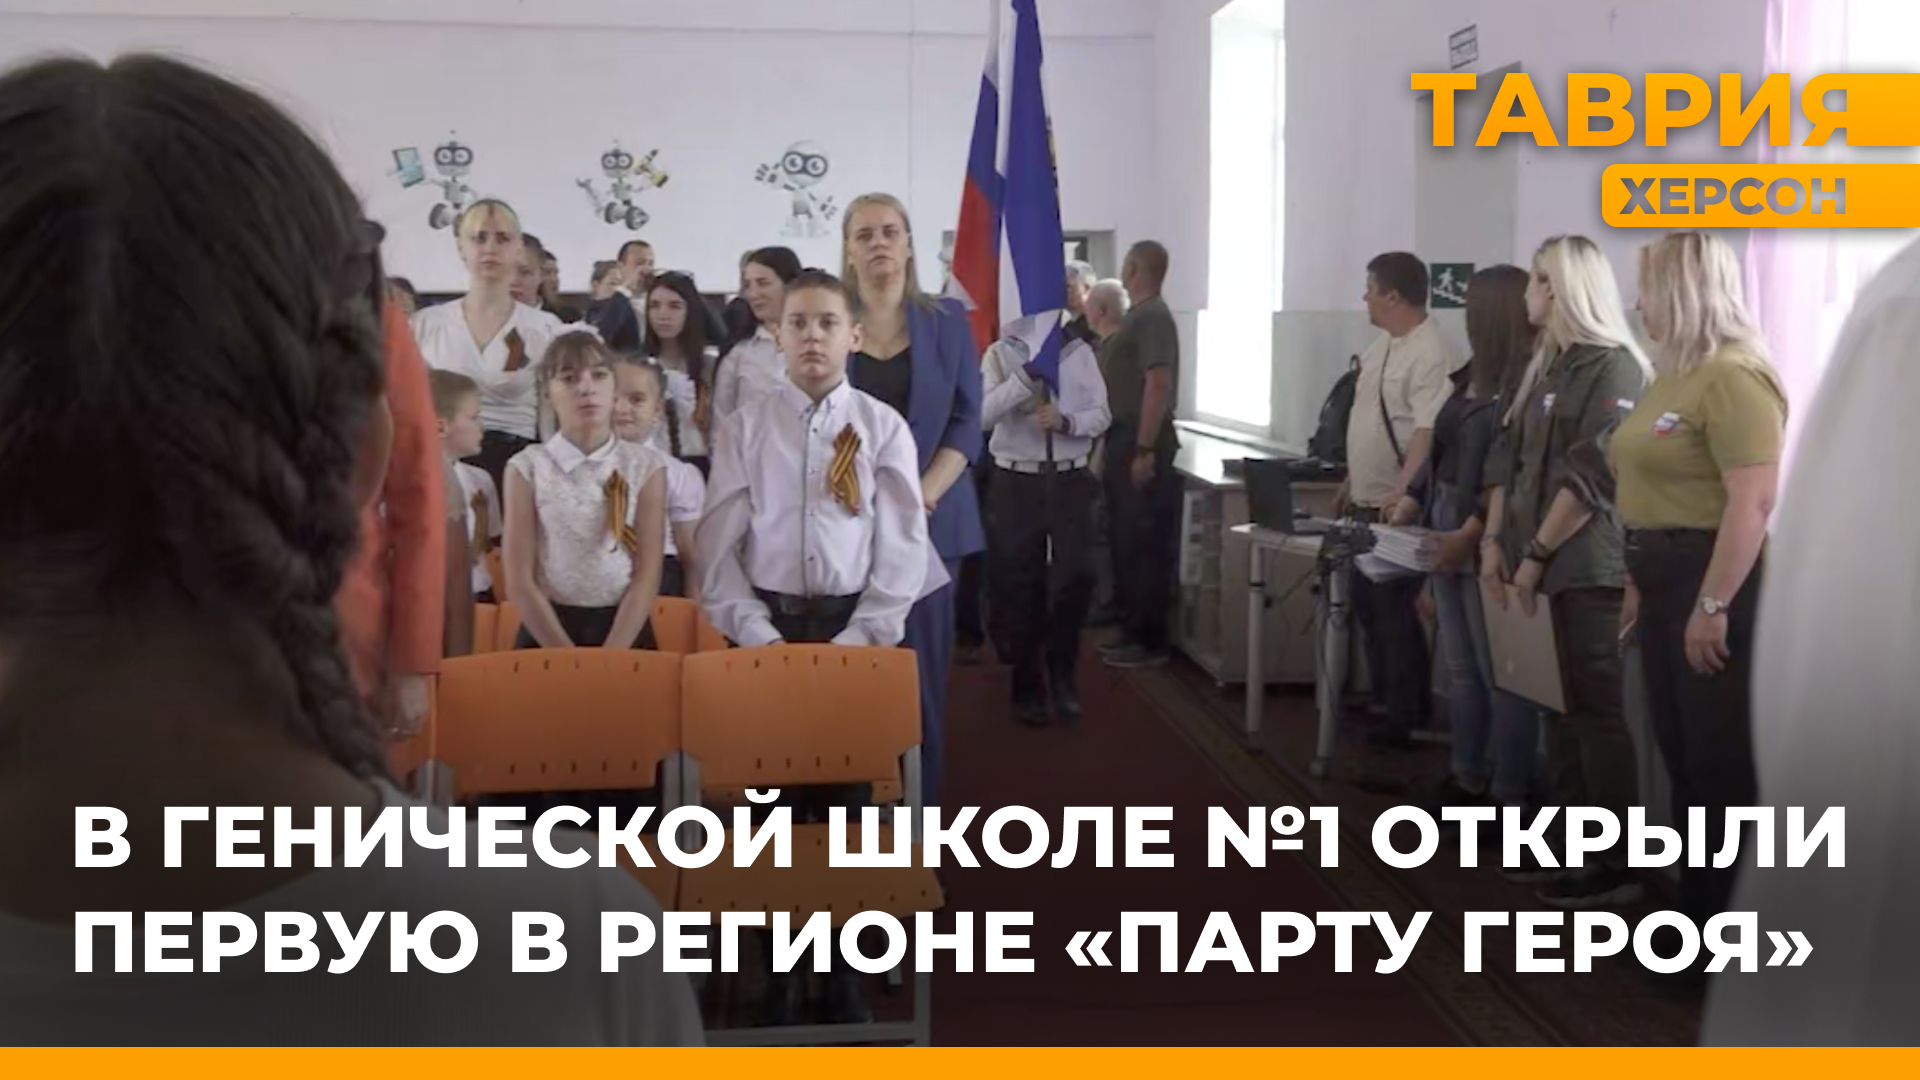 В Генической школе №1 открыли первую в регионе "Парту Героя"